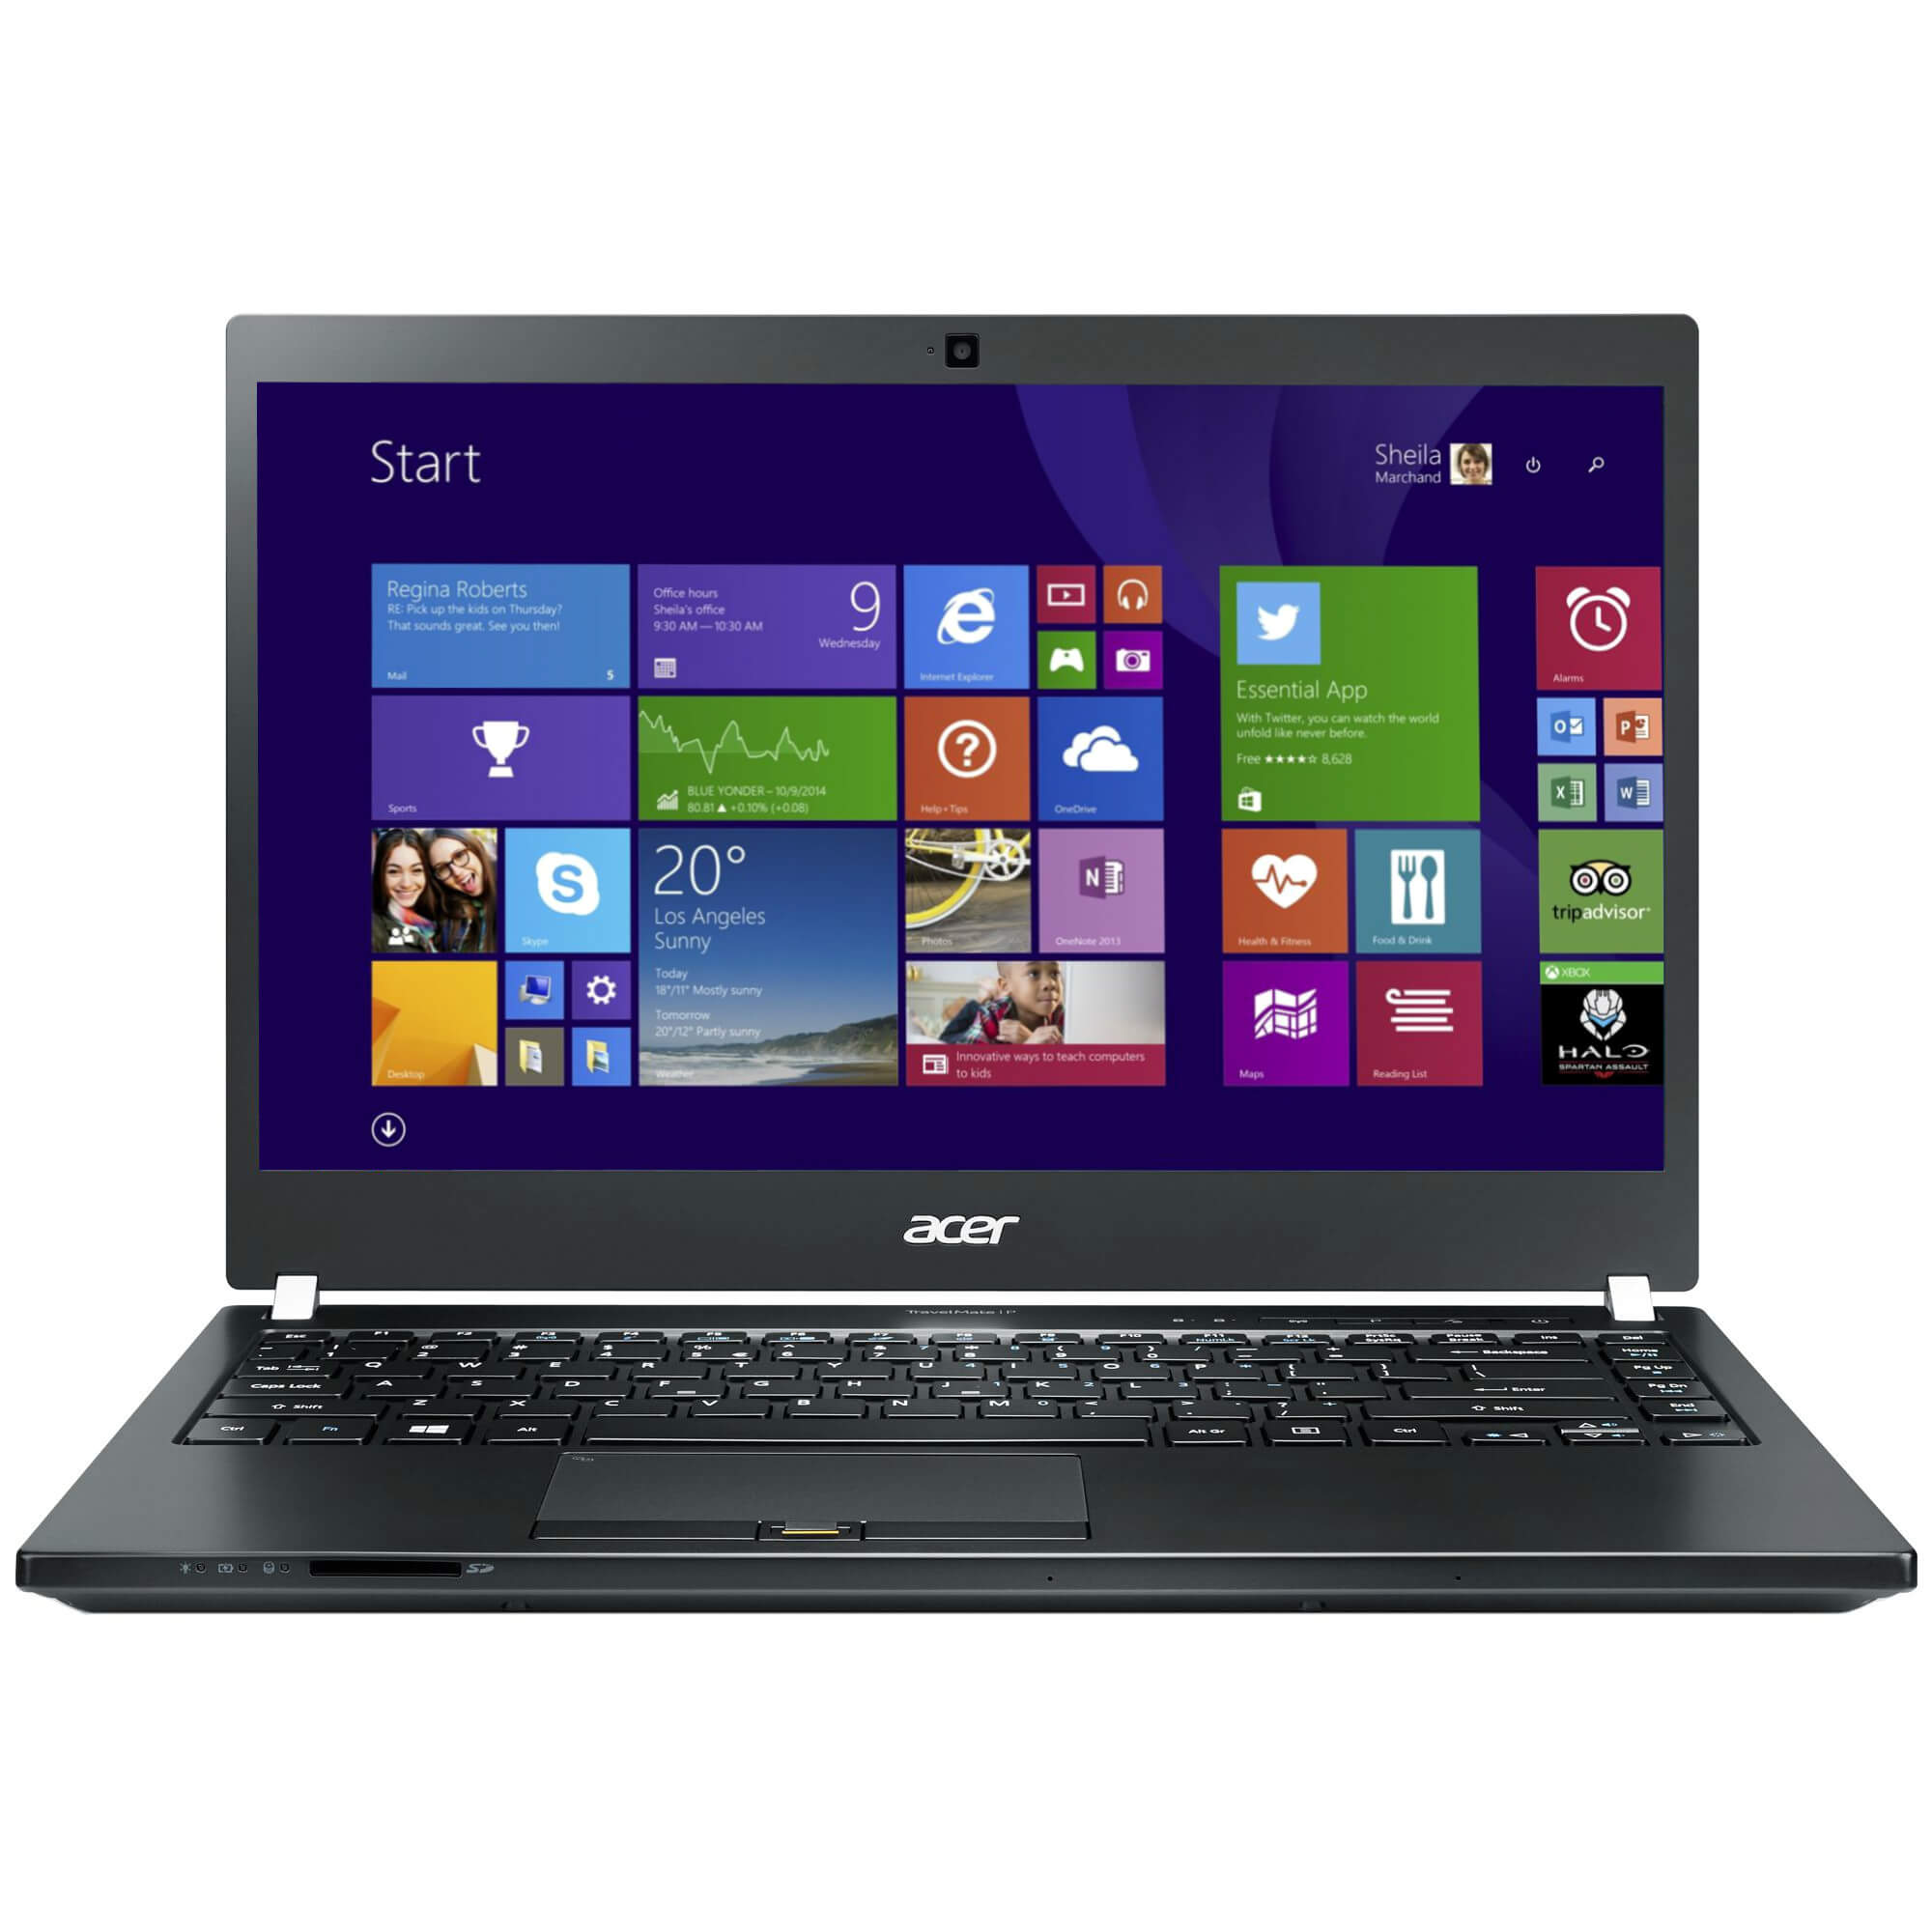  Laptop Acer TMP645, Intel Core i7-5600U, 12GB DDR3, 2 x SSD 256GB, nVidia GeForce GT 840M 2GB, Windows 8.1 Pro 